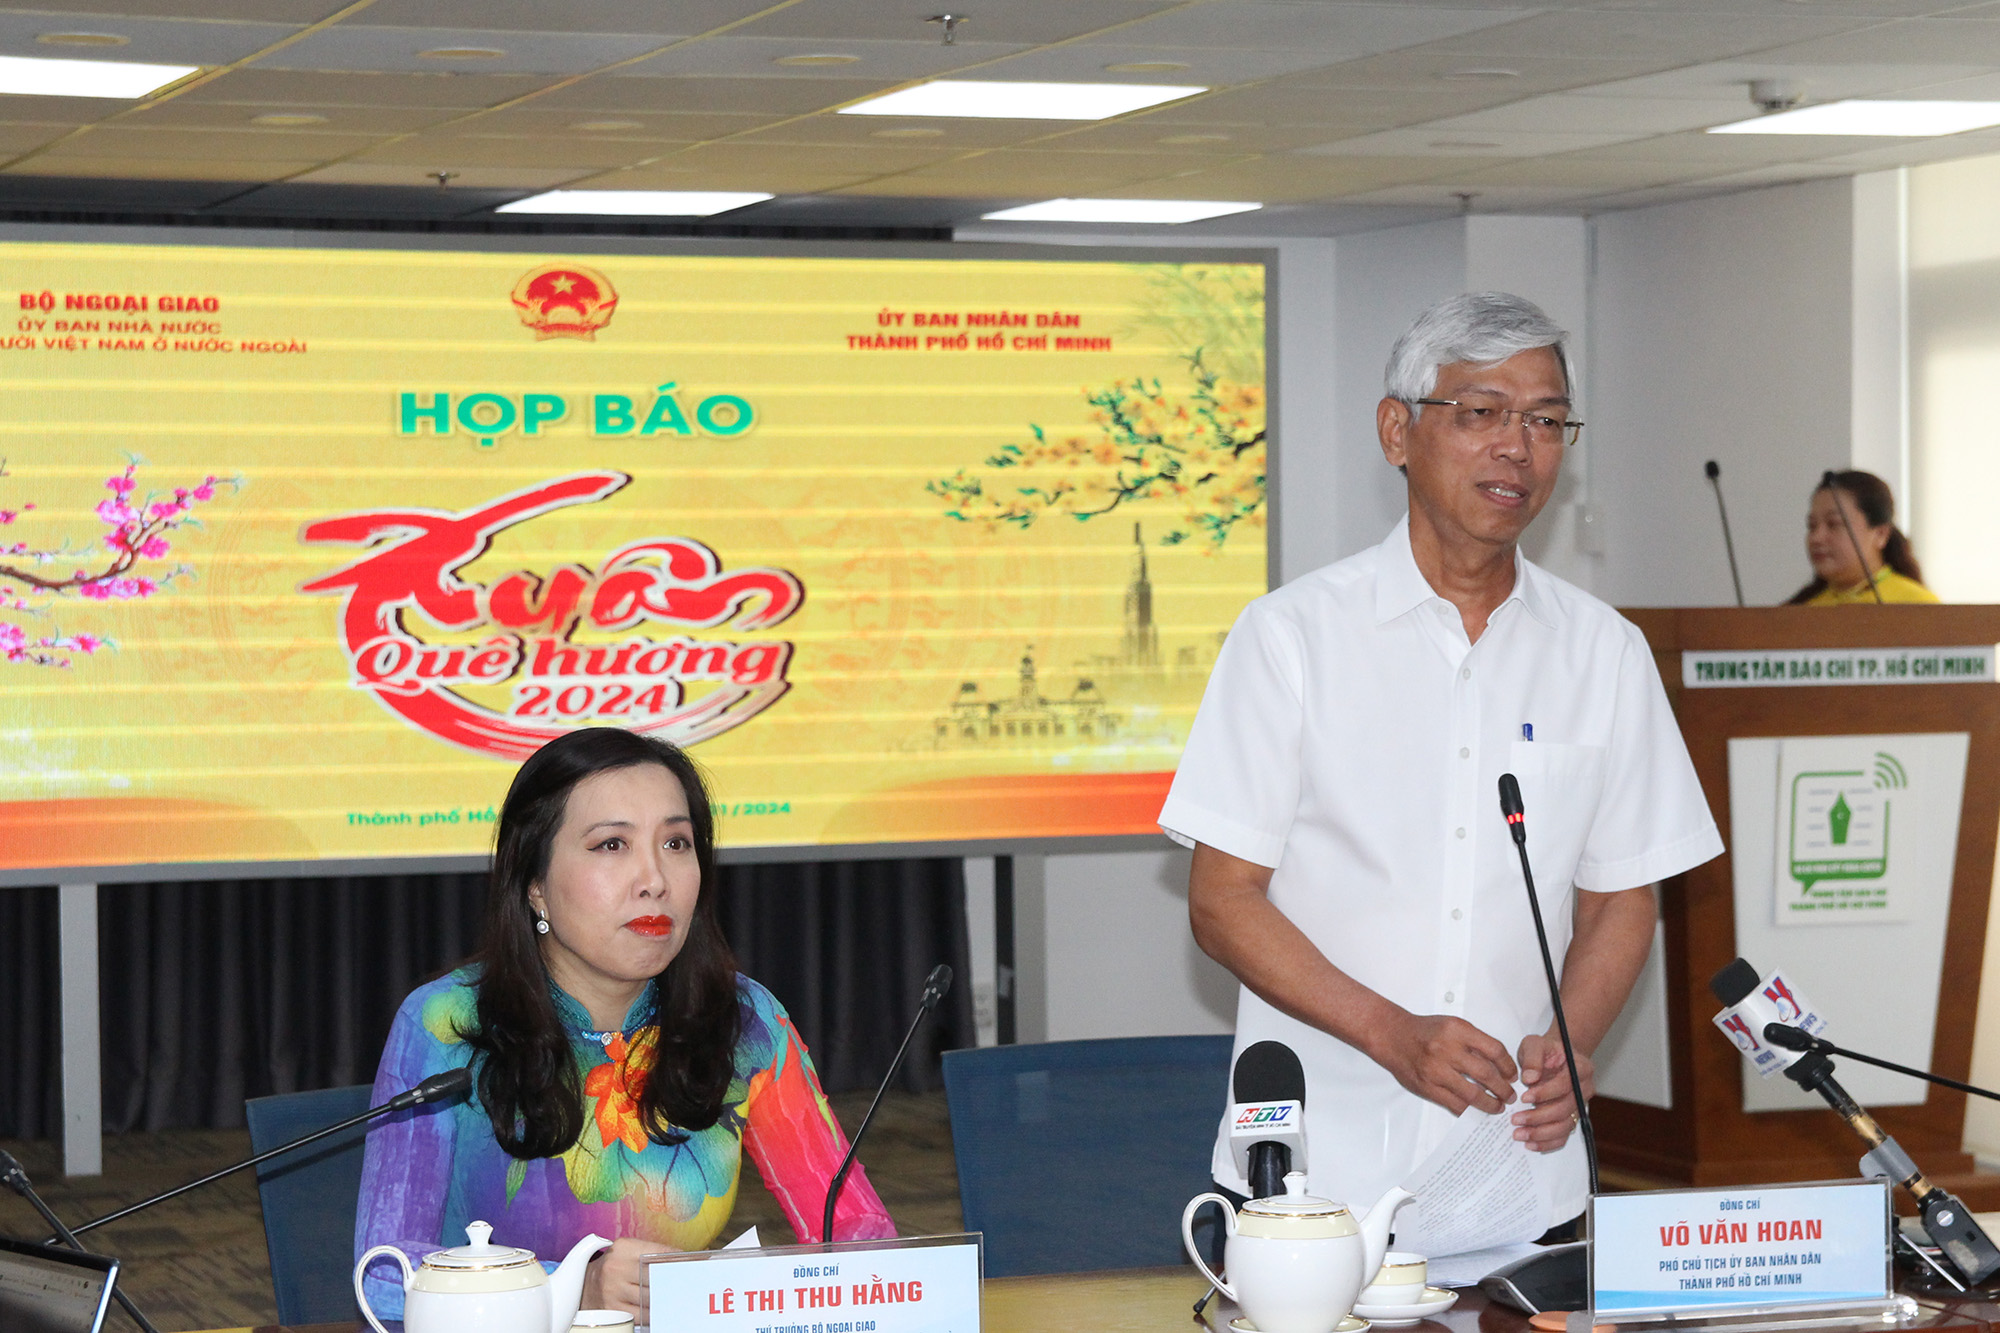 Đồng chí Võ Văn Hoan - Phó Chủ tịch UBND TP. Hồ Chí Minh tại buổi họp báo (Ảnh: H.Hào).